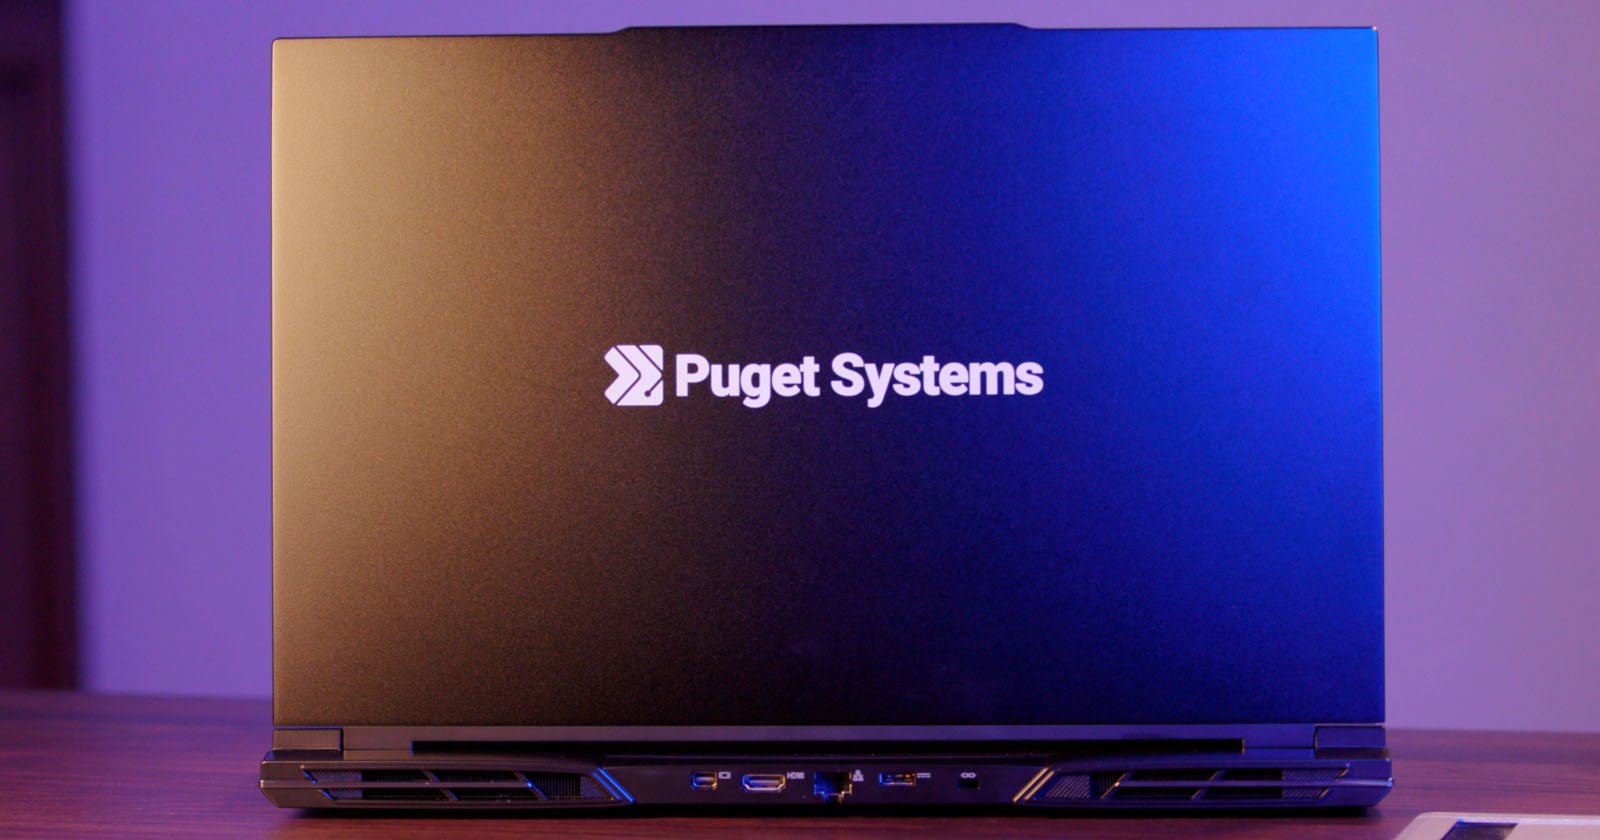 Puget Systems Mobile 17 workstation laptop